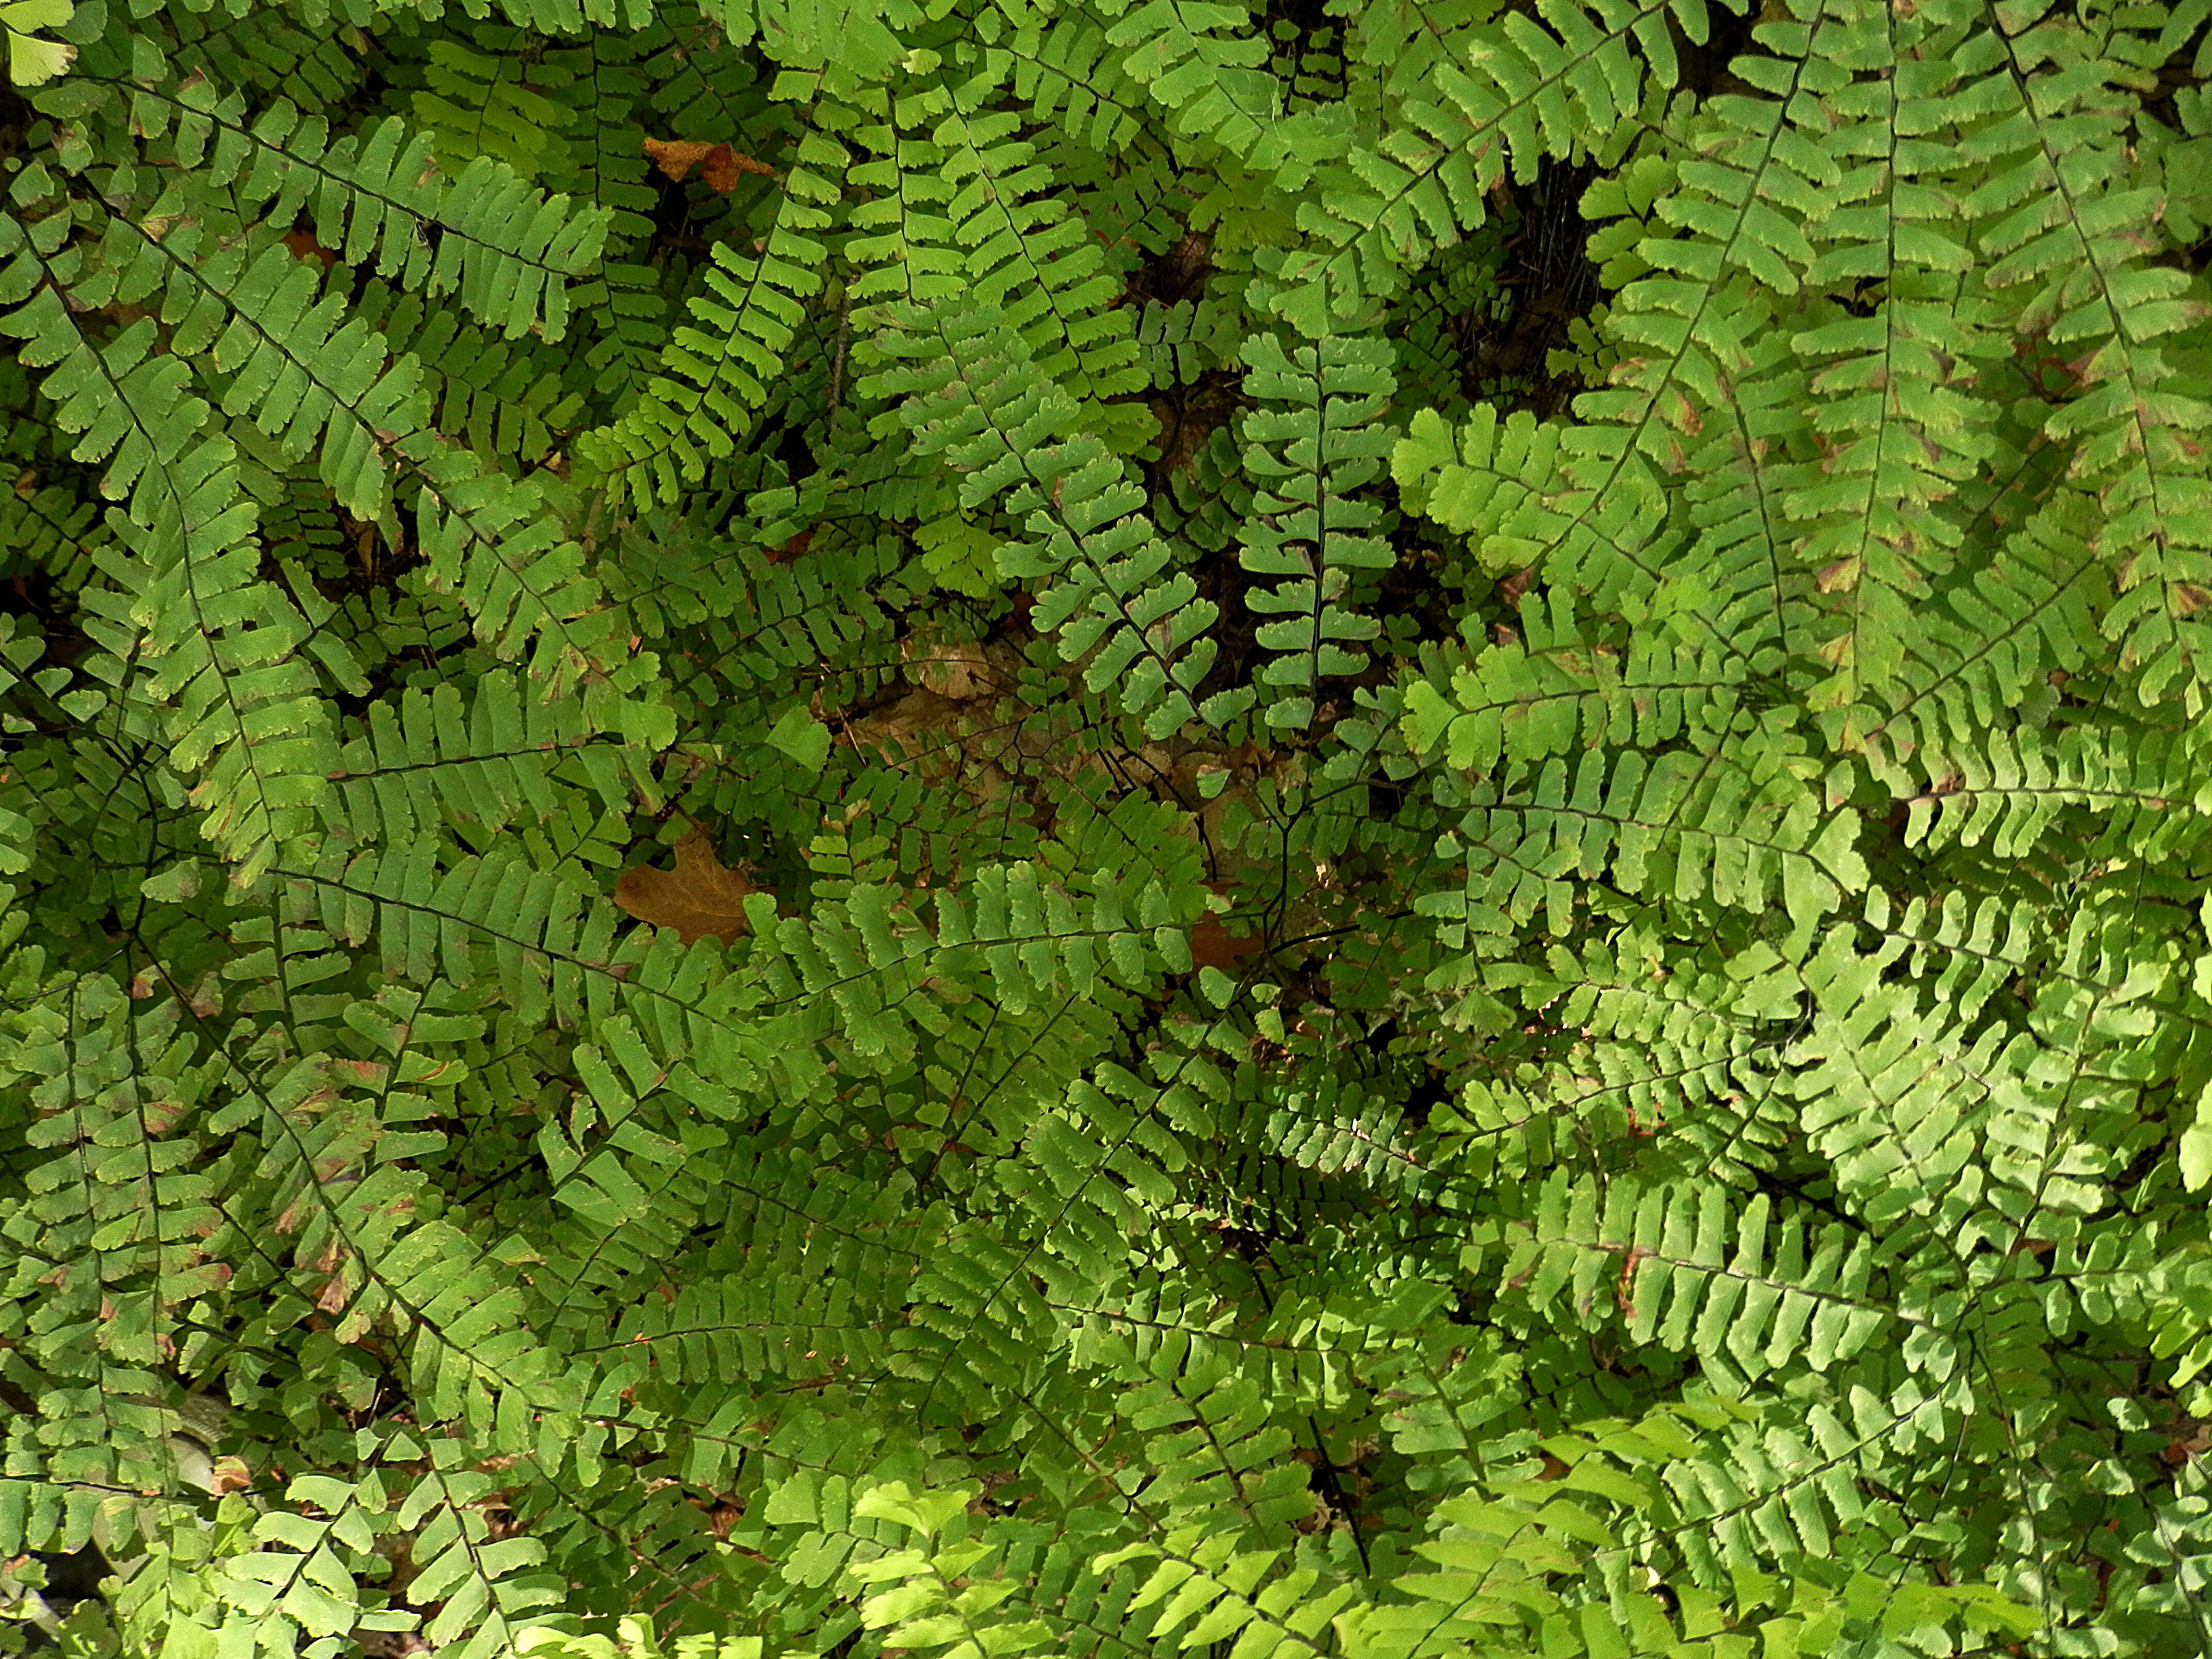 Image of Northern maidenhair fern